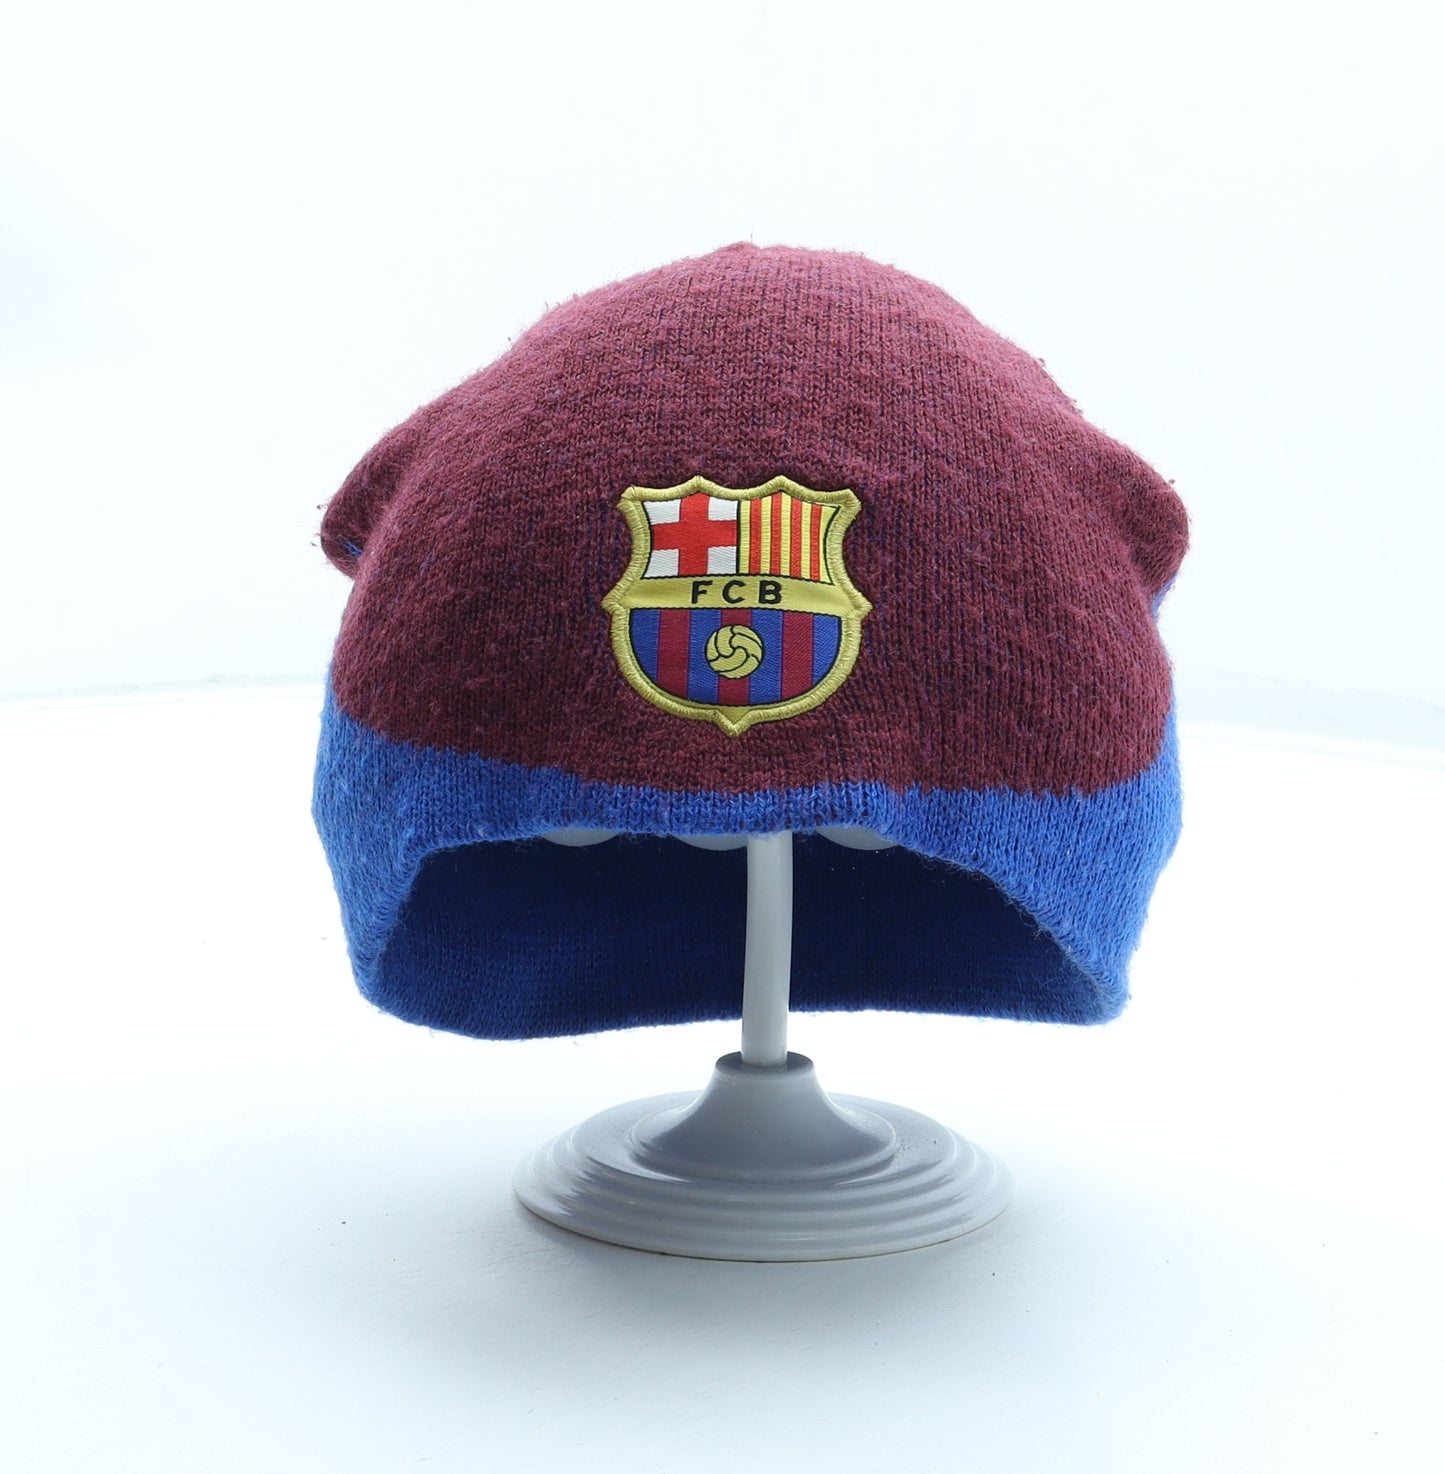 FC Barcelona Mens Multicoloured Acrylic Beanie One Size - Football Club Barcelona